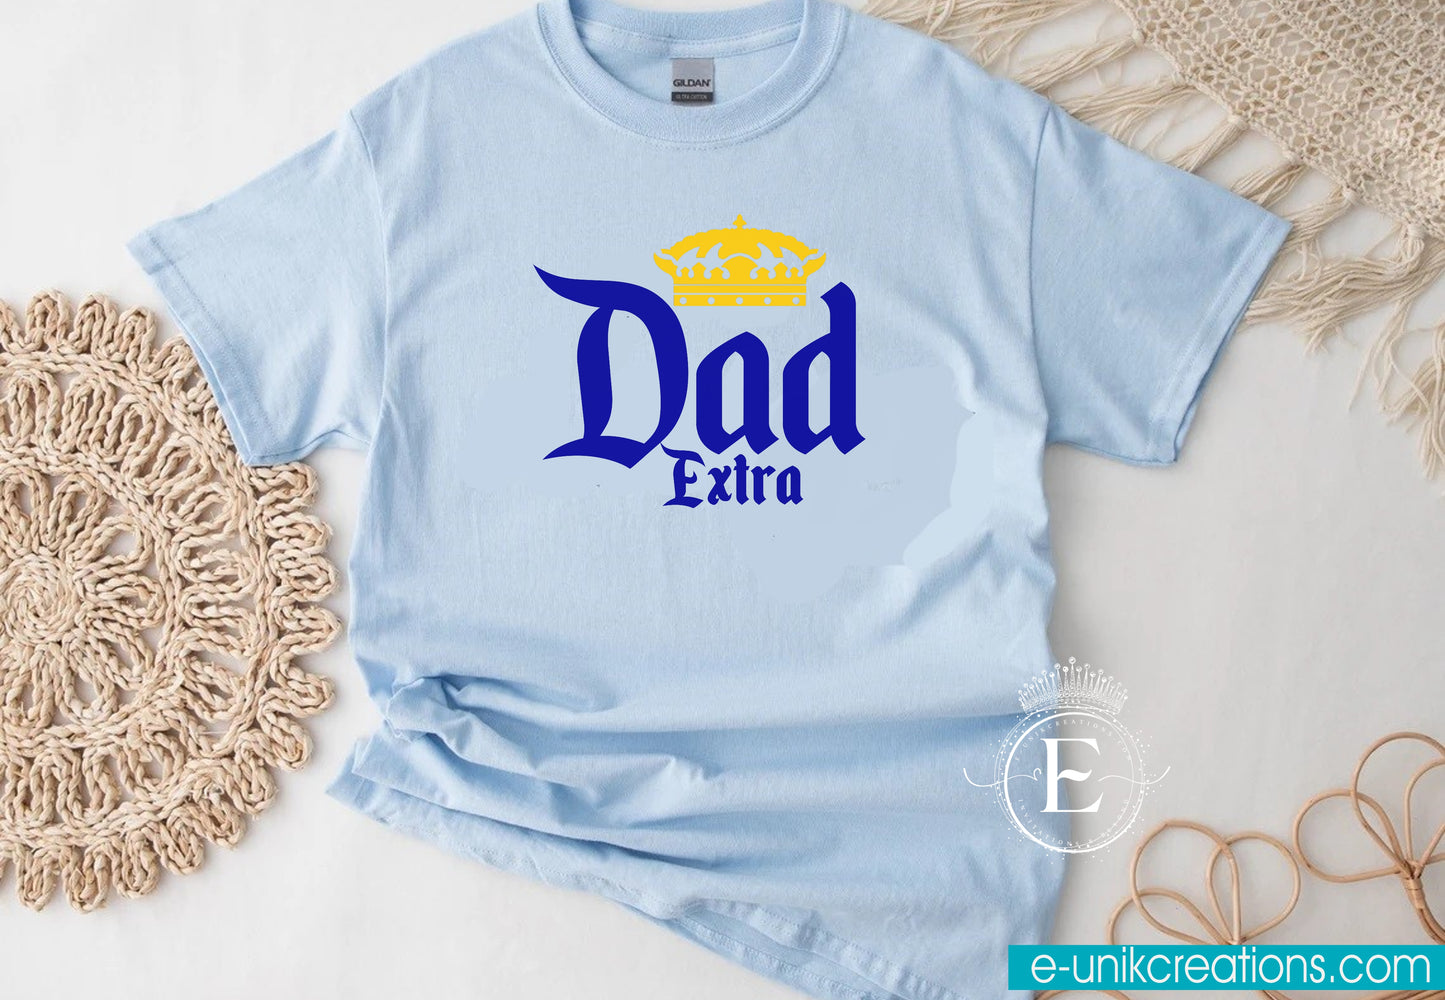 Papá/Dad Extra T-shirt